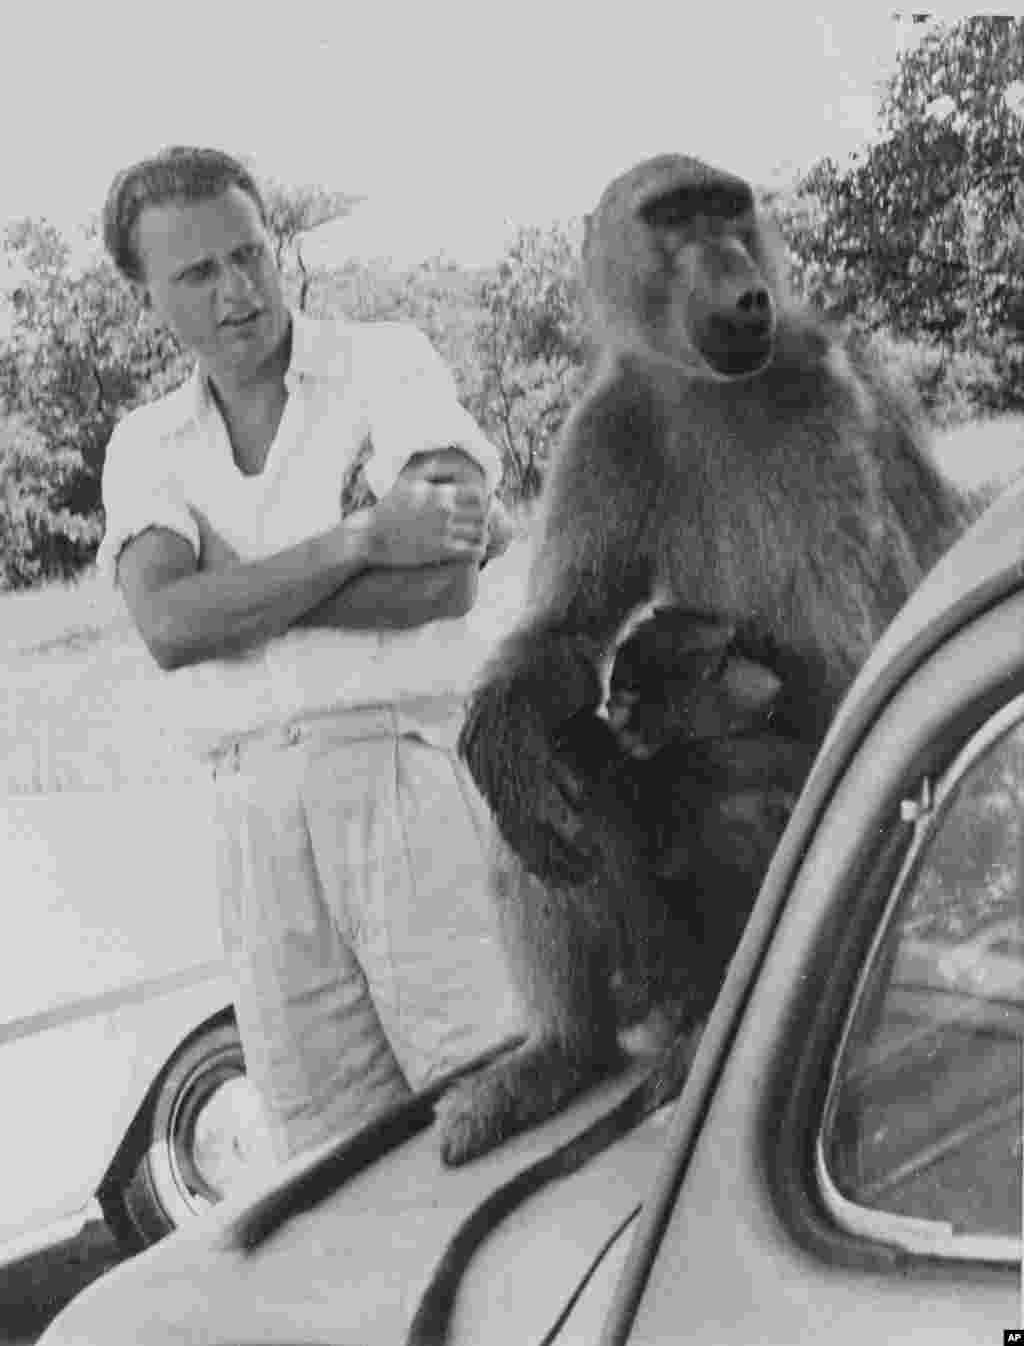 L&#39;évangéliste américain Billy Graham regarde un babouin lors d&#39;une visite aux chutes Victoria en Rhodésie du Nord, le 29 février 1960.